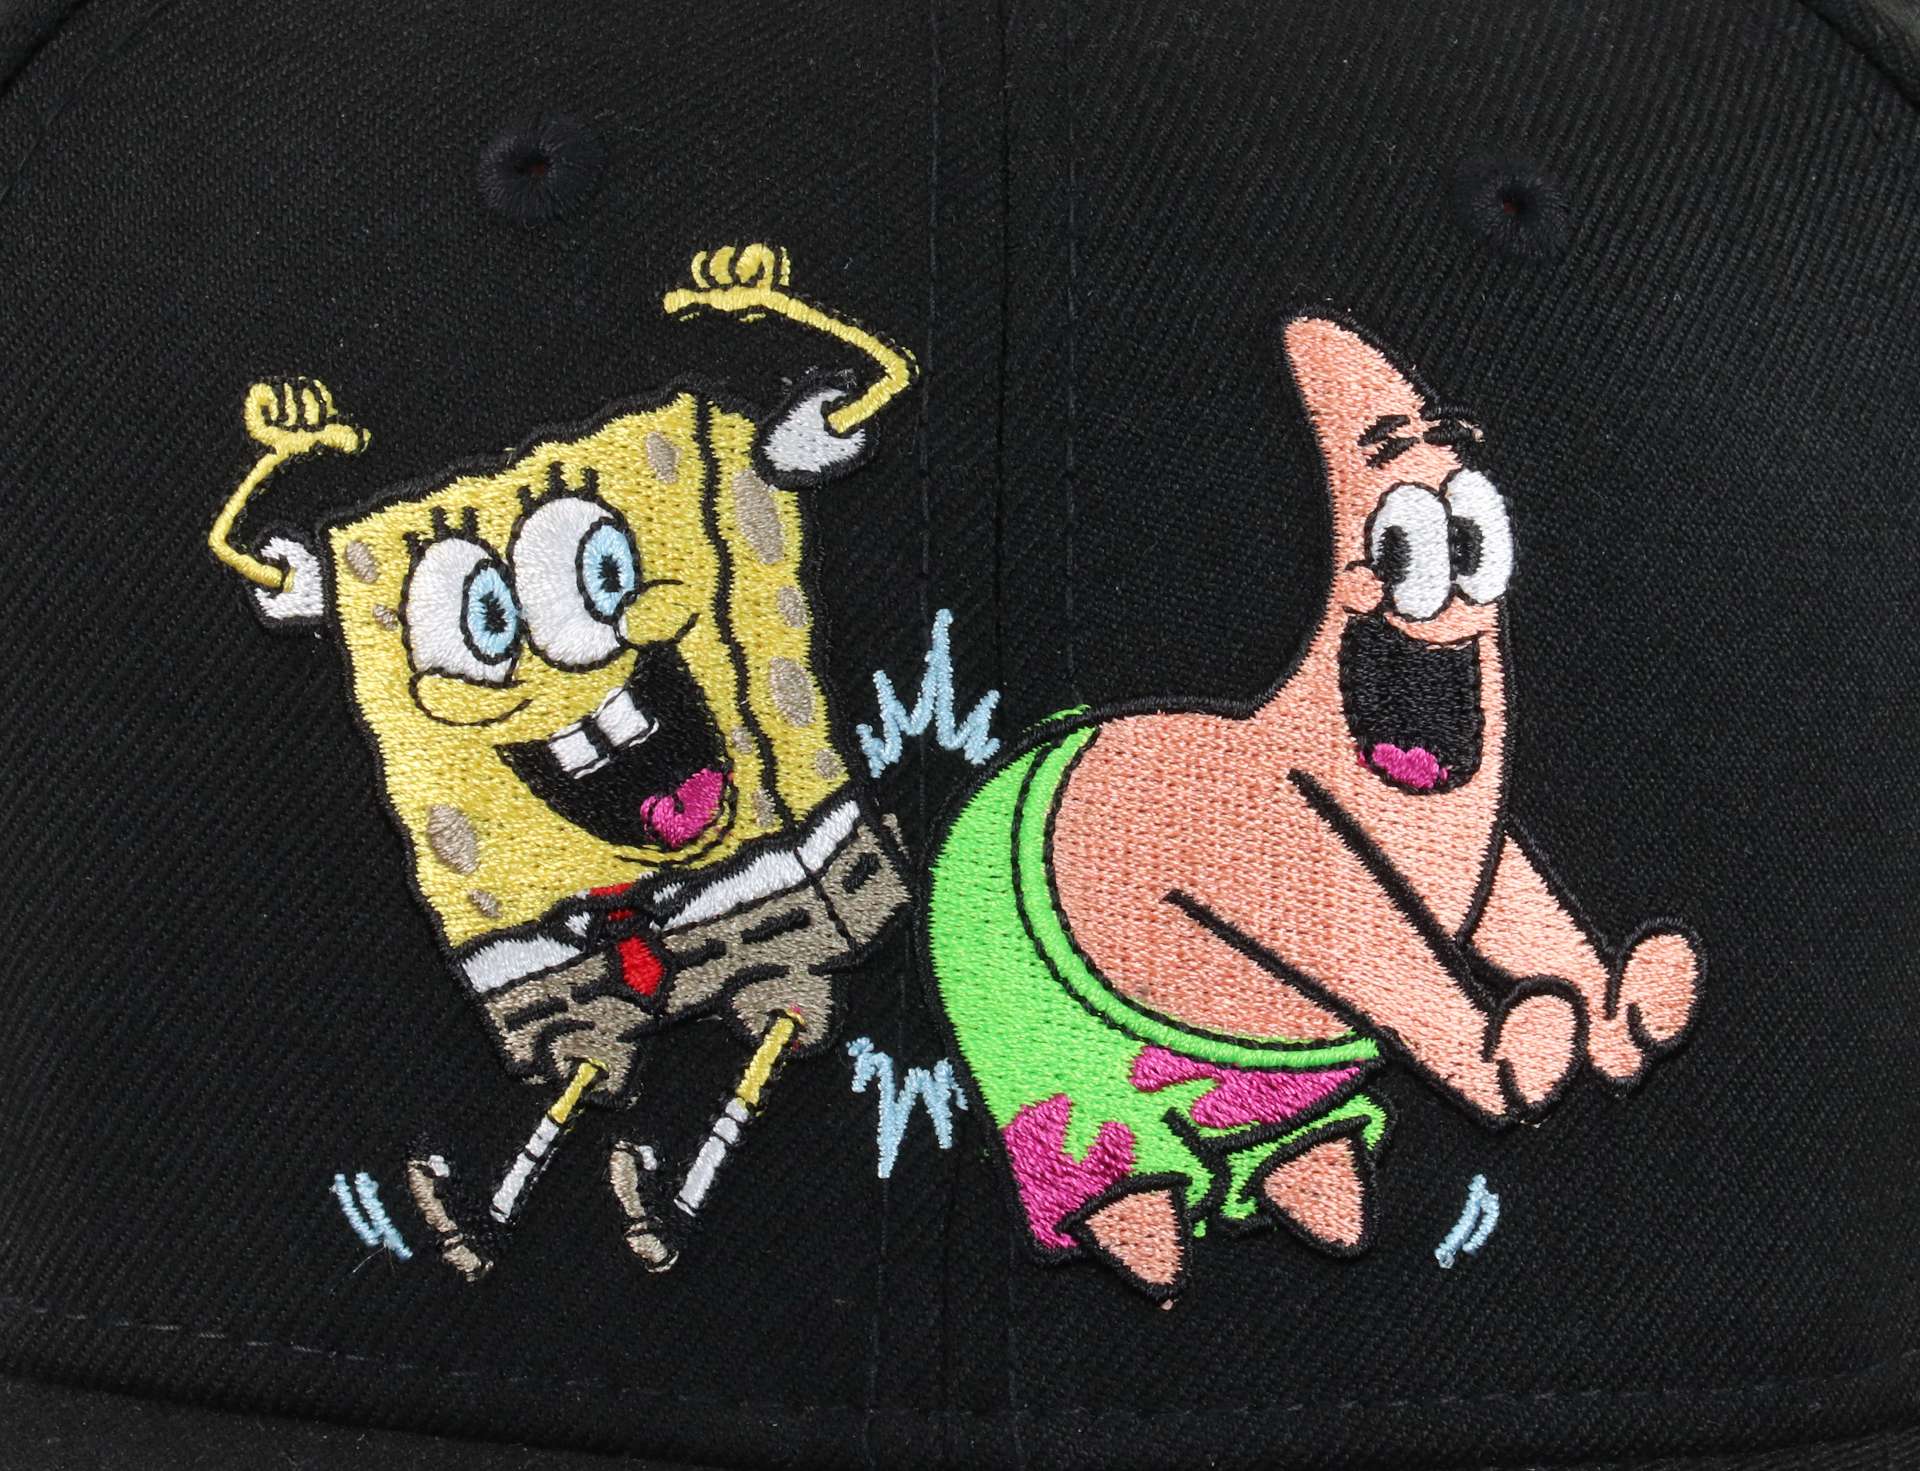 Spongebob Squarepants Spongebob & Patrick Black 9Fifty Snapback Cap New Era